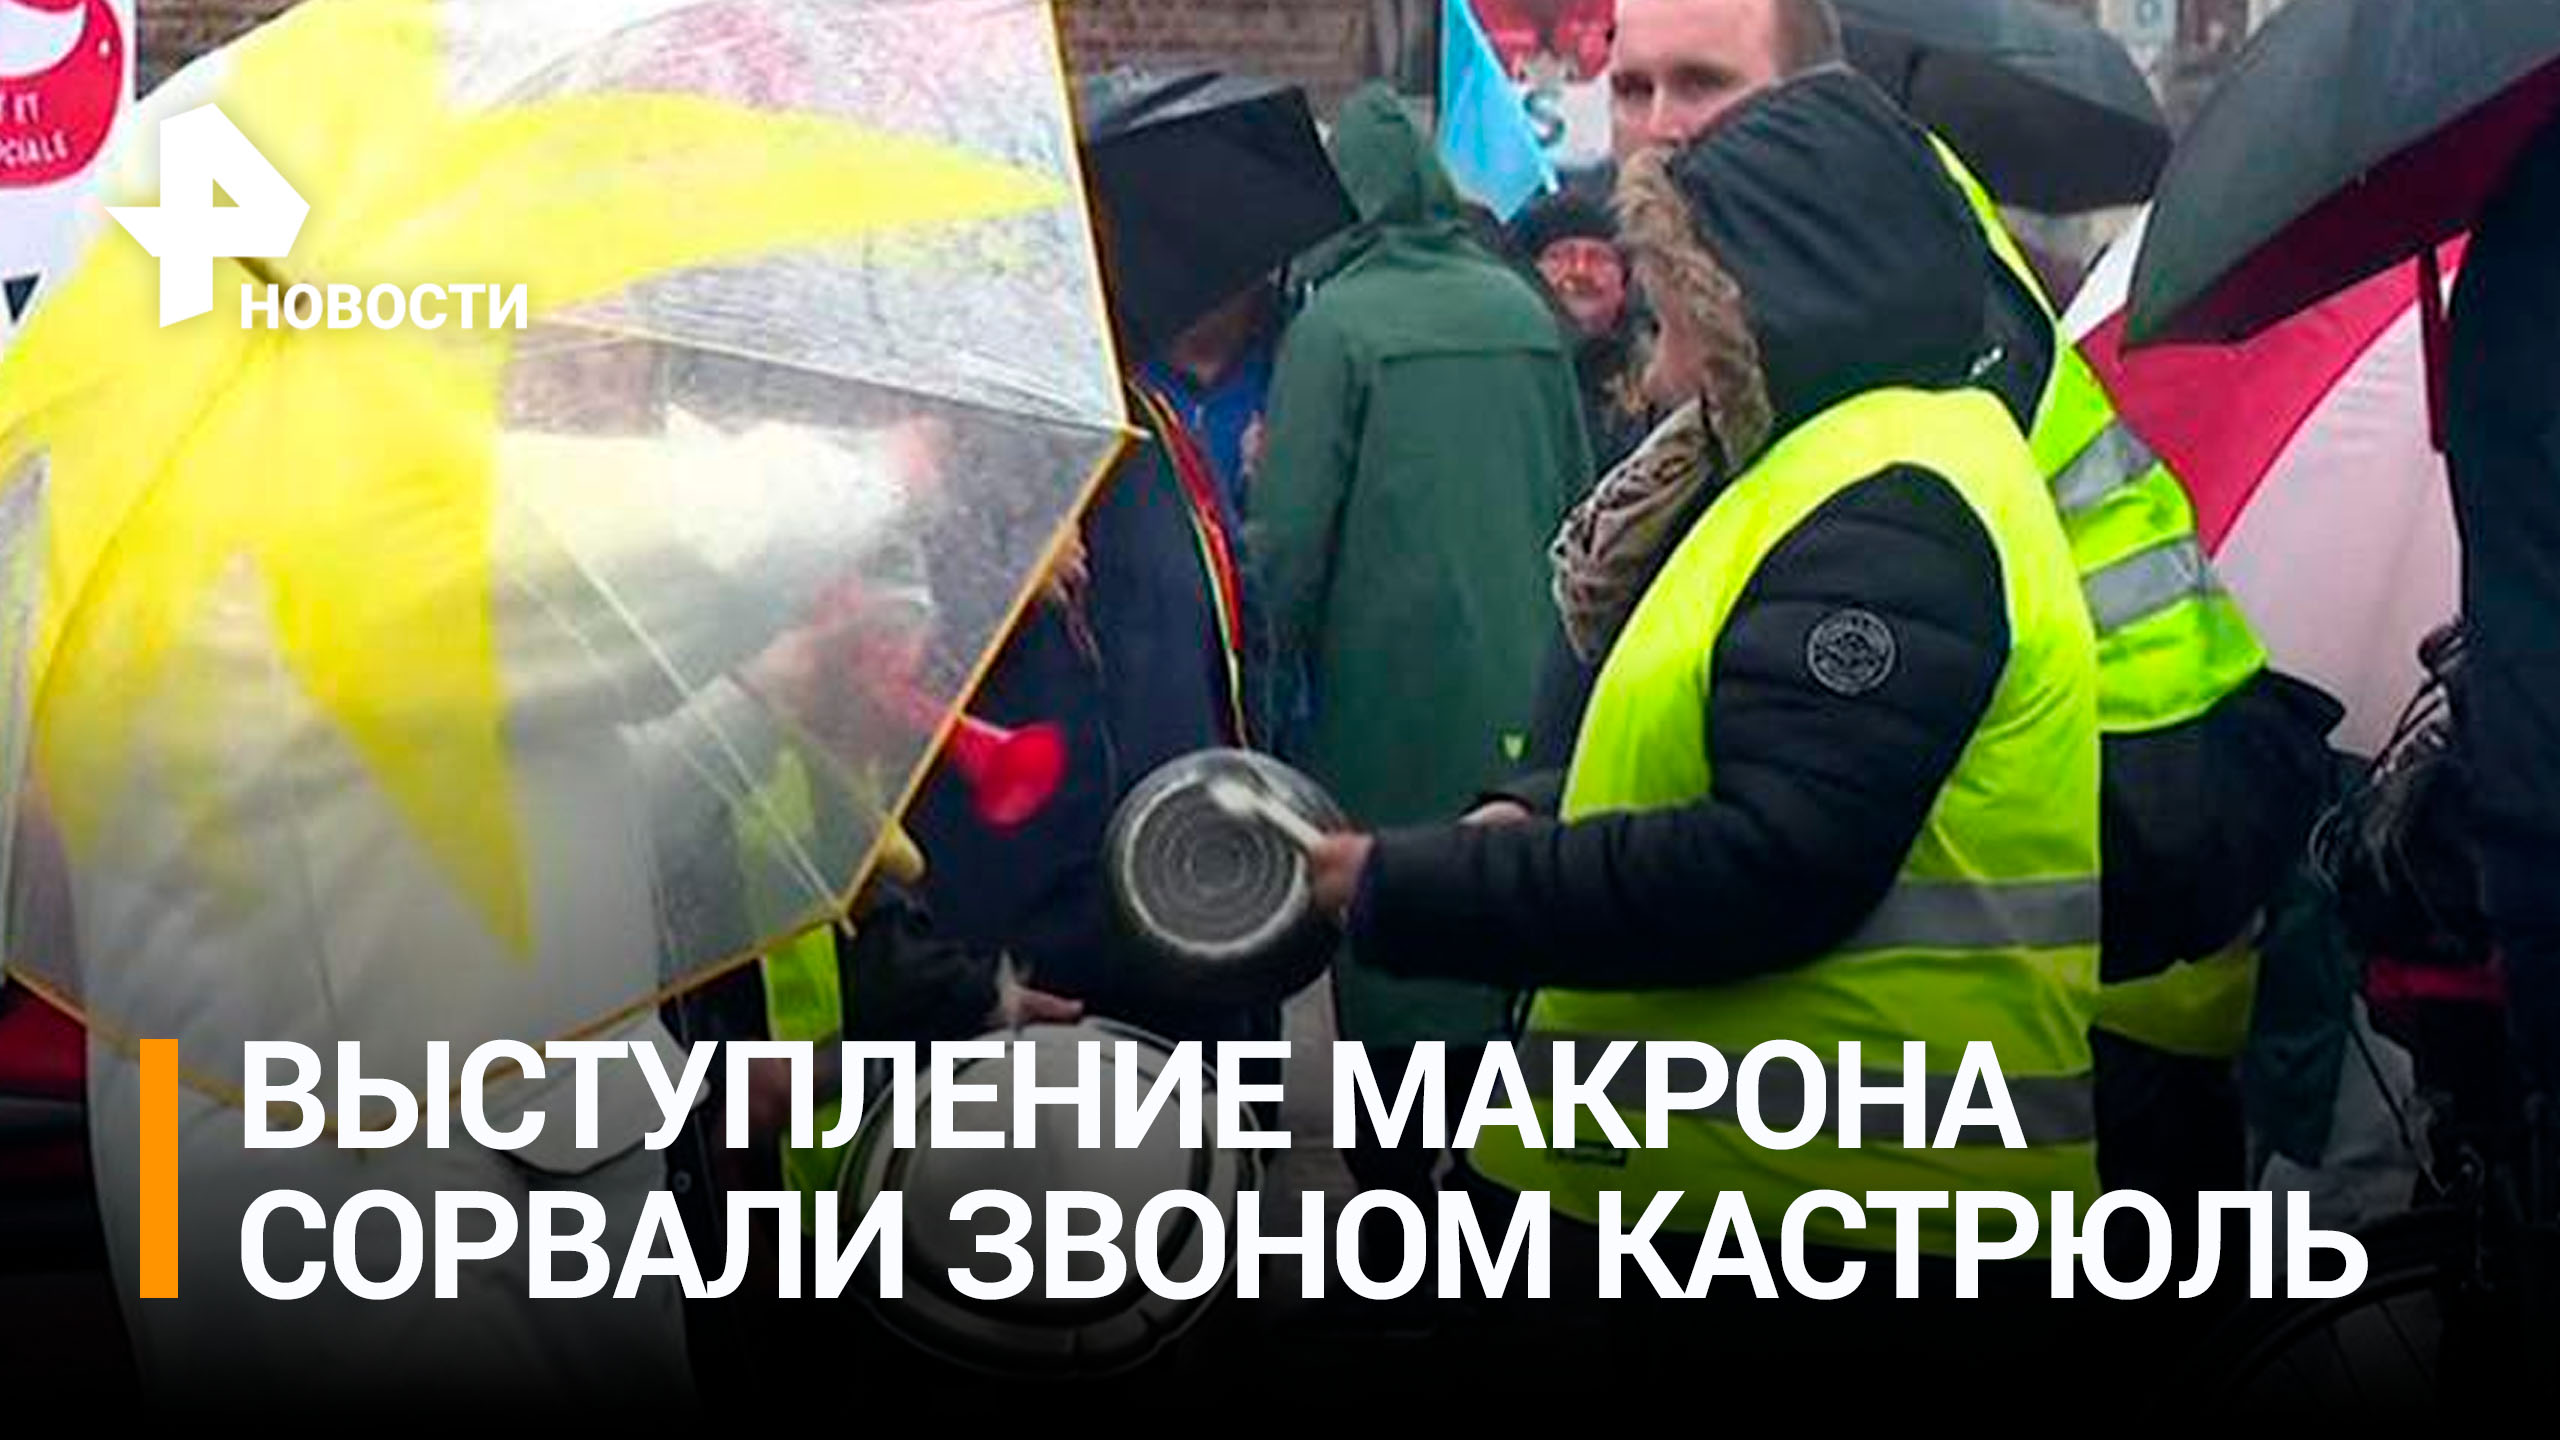 Выступление Макрона сорвали акцией протеста со звоном кастрюль / РЕН Новости